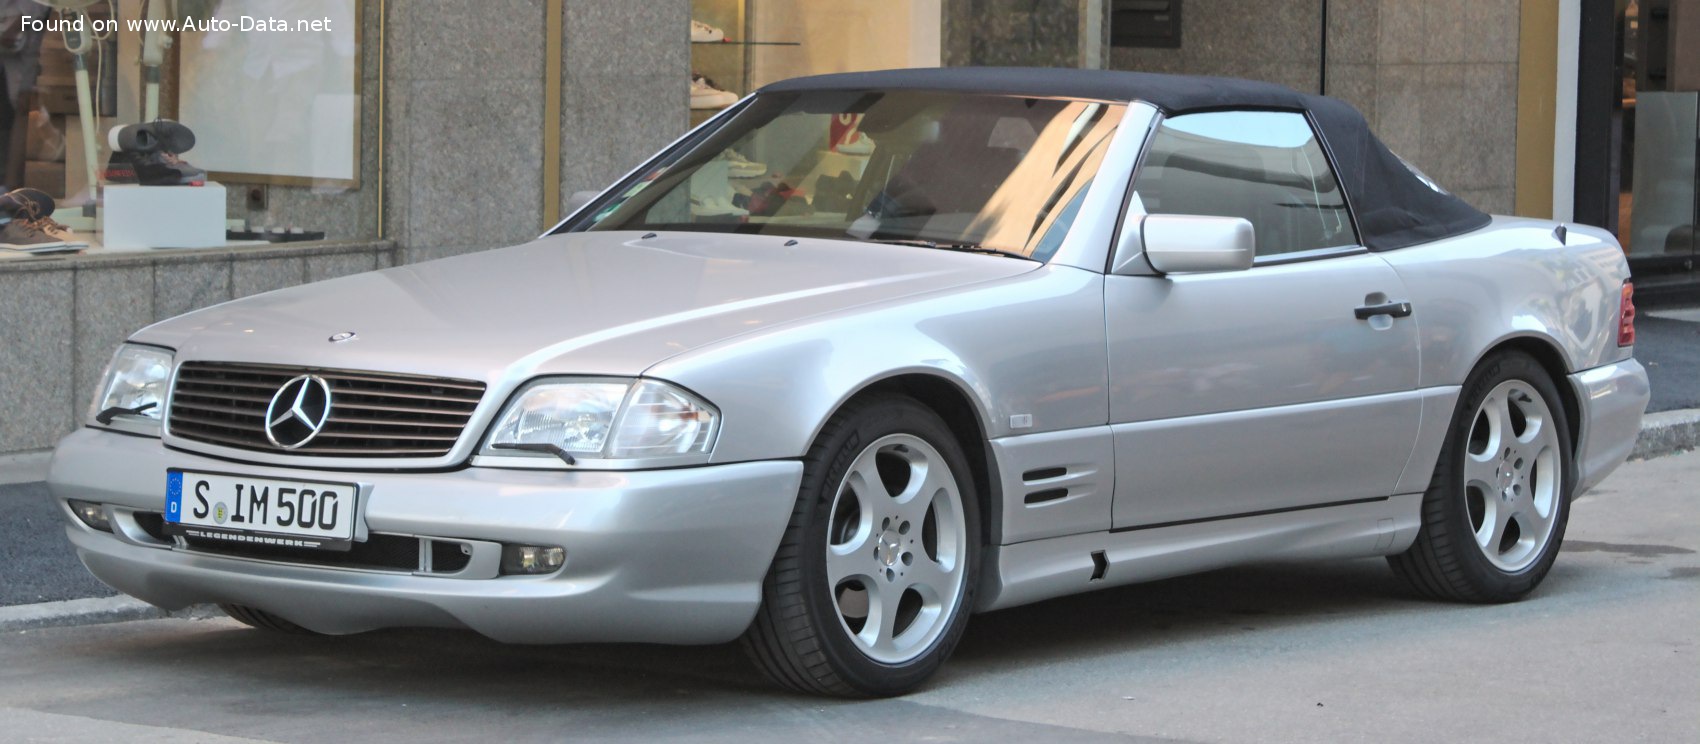 1998 Mercedes Benz Sl R129 Facelift 1998 Sl 600 V12 394 Hp Automatic Technical Specs Data Fuel Consumption Dimensions